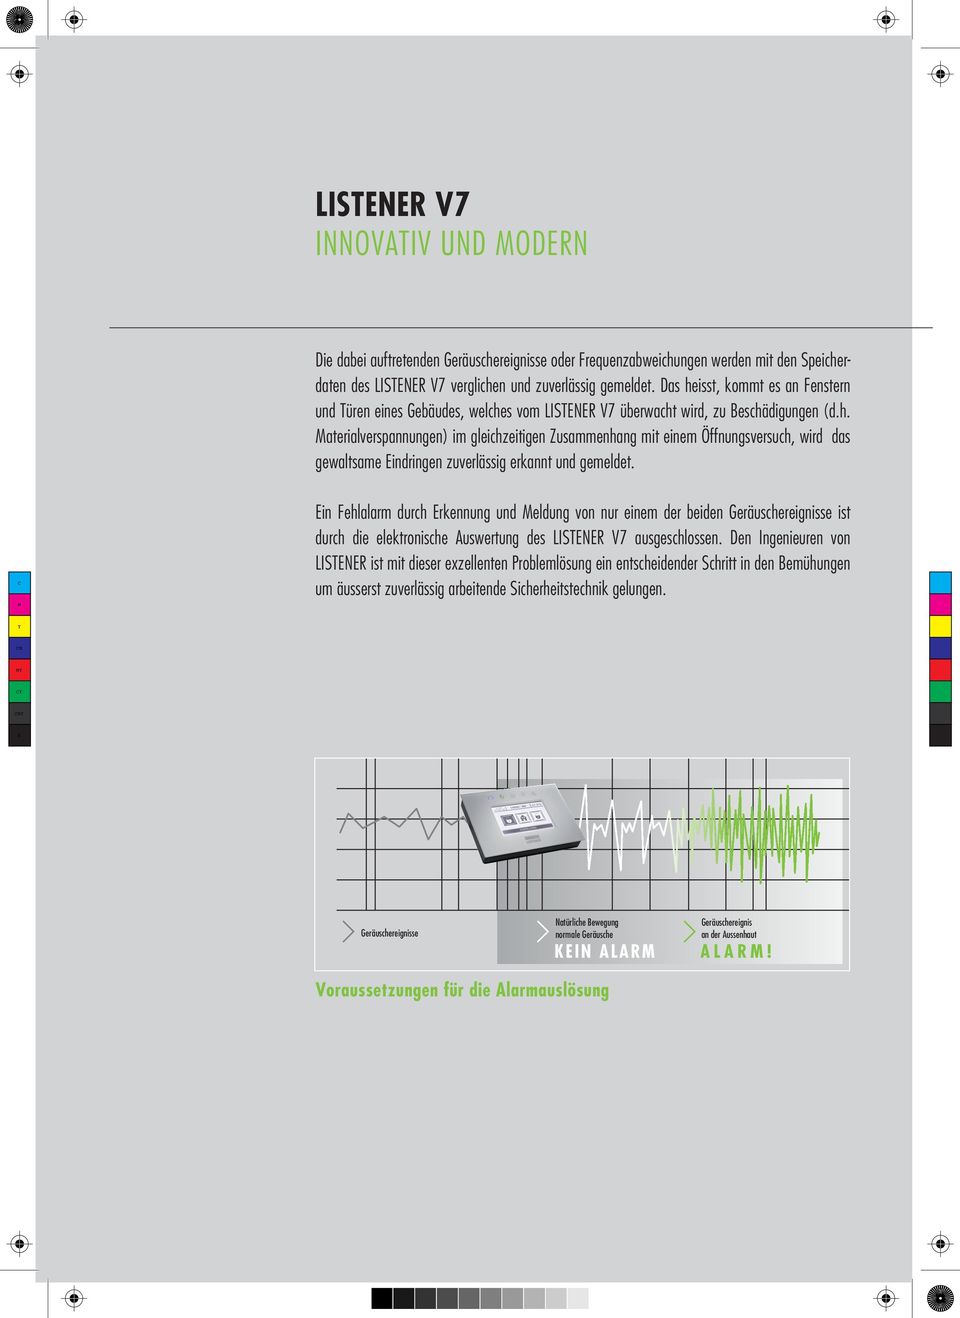 Ein Fehlalarm durch Erkennung und eldung von nur einem der beiden Geräuschereignisse ist durch die elektronische Auswertung des LISTENER V7 ausgeschlossen.